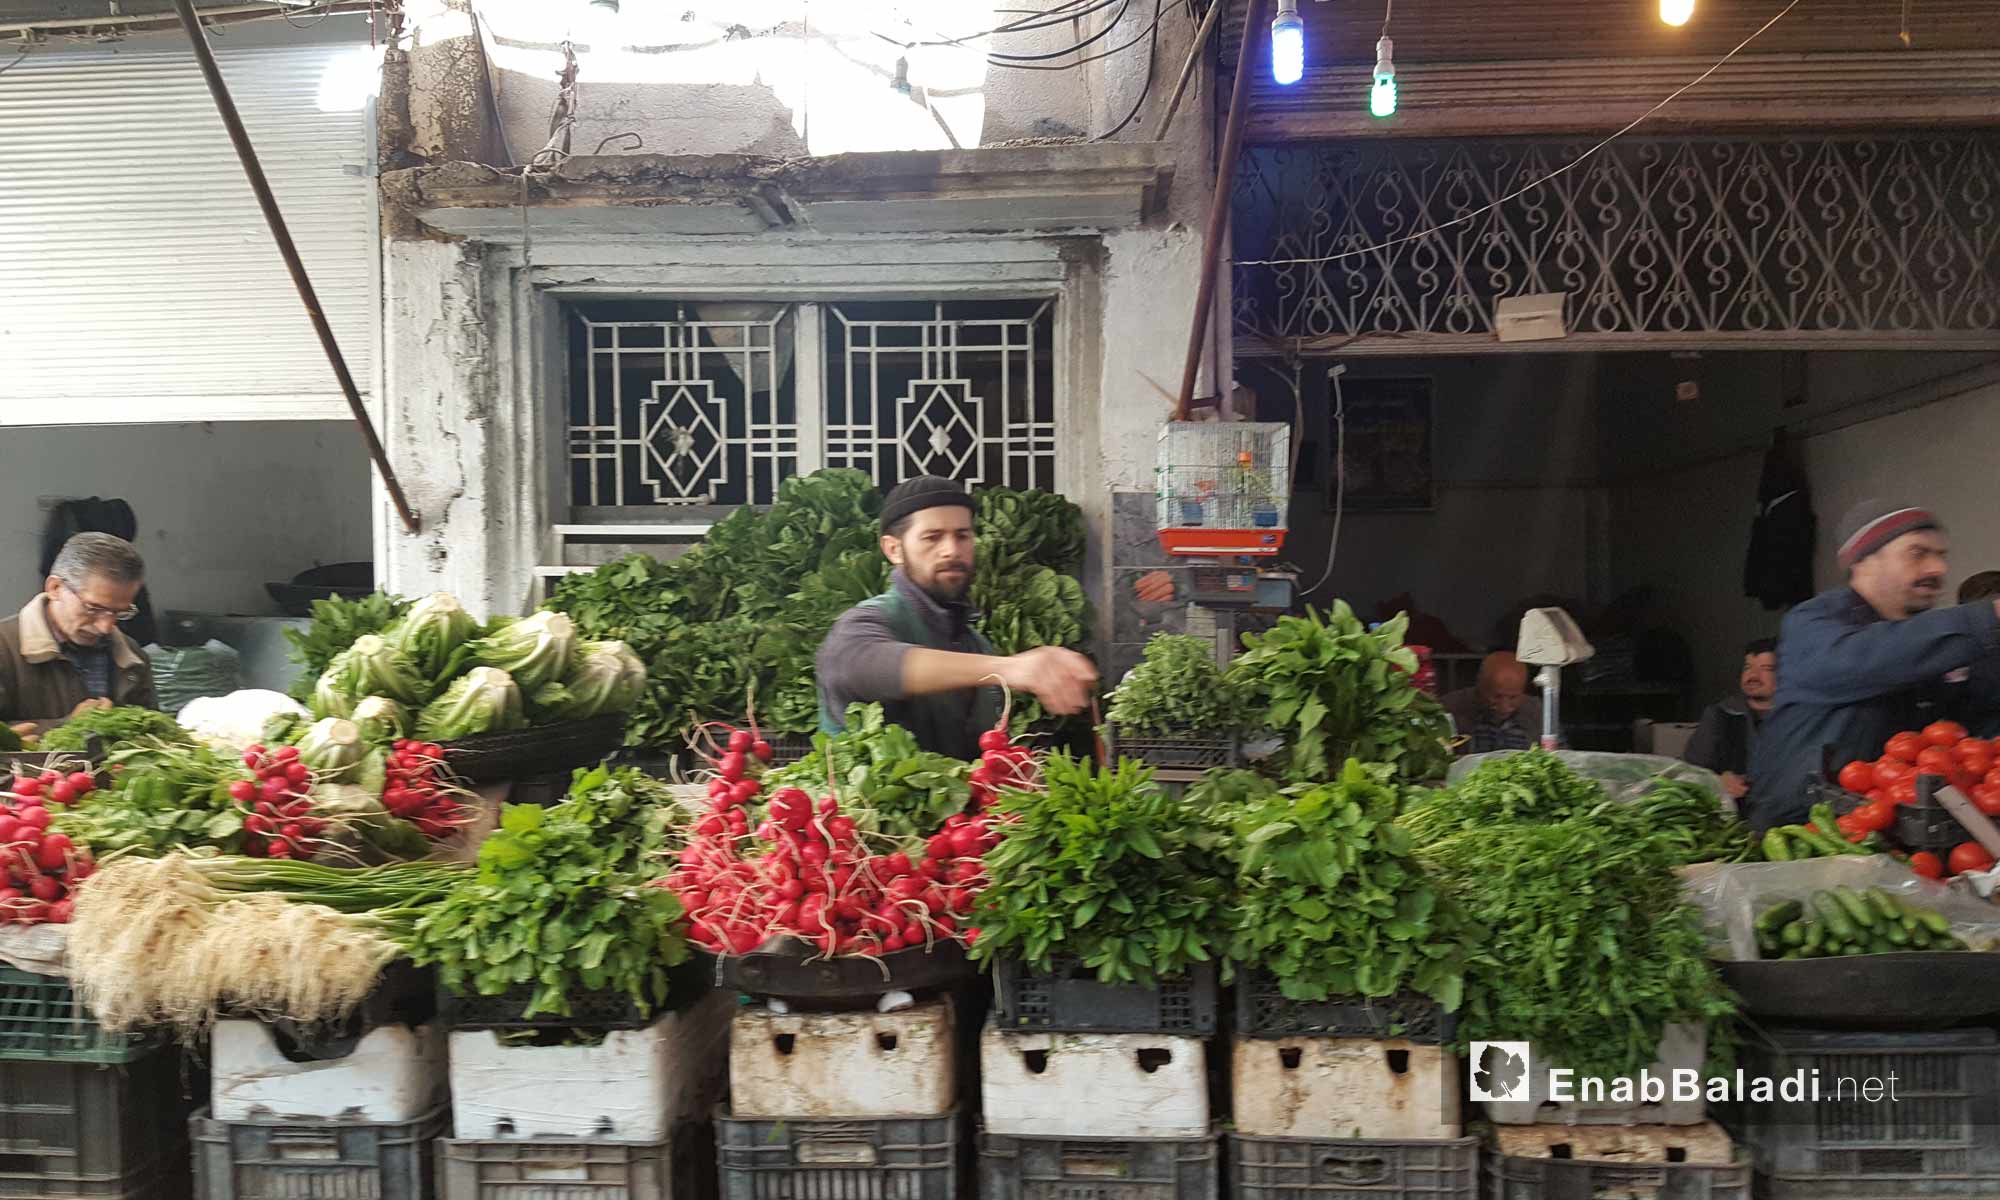 سوق الخضار في مدينة القامشلي - 19 نيسان 2017 (عنب بلدي)